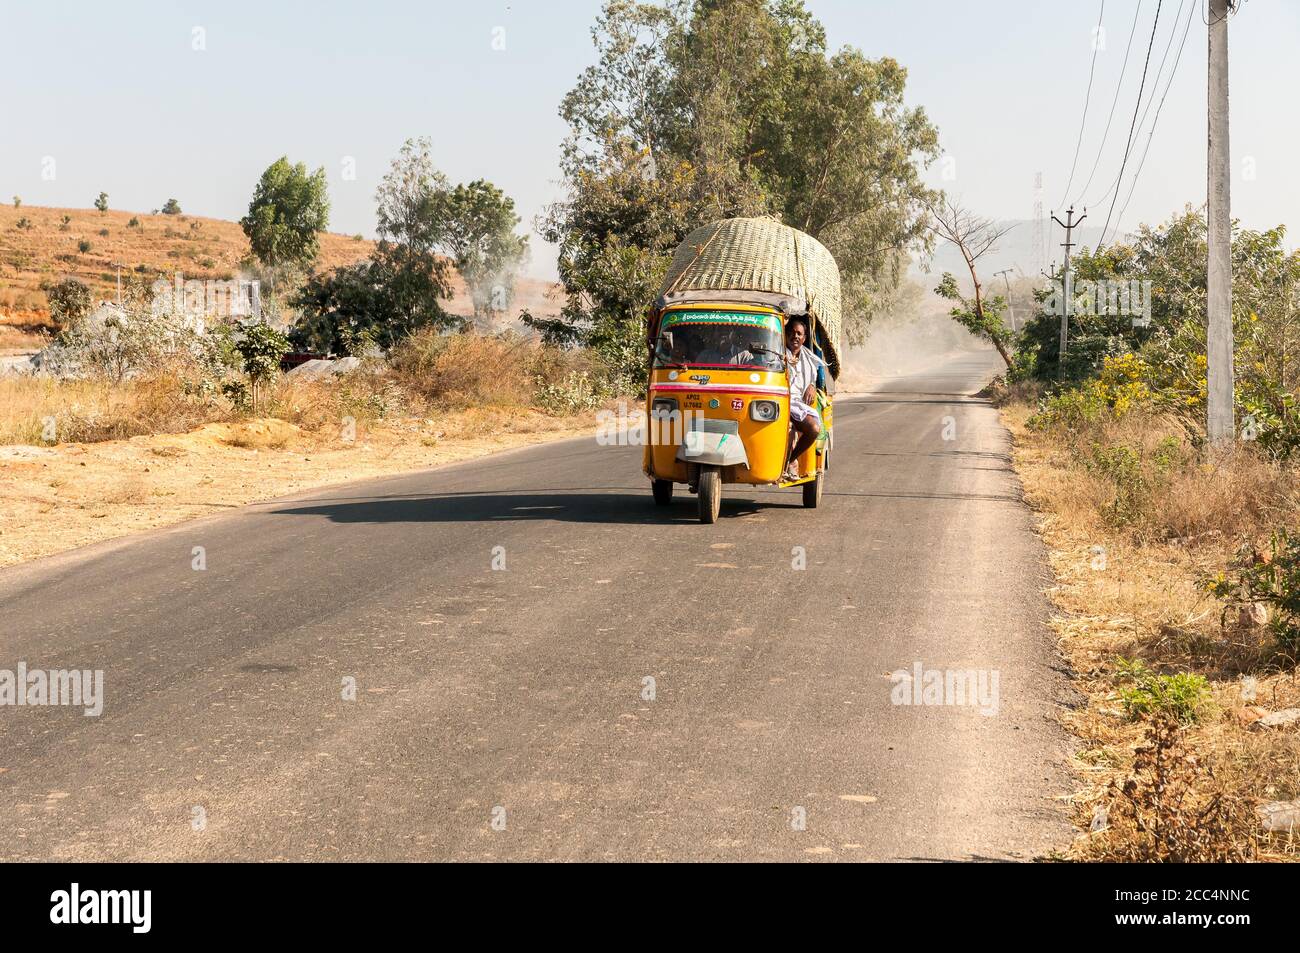 Puttaparthi, Andhra Pradesh, Inde - 12 janvier 2013 : les Indiens voyagent en taxi en pousse-pousse le long de la route du village de Puttaparthi, Inde Banque D'Images